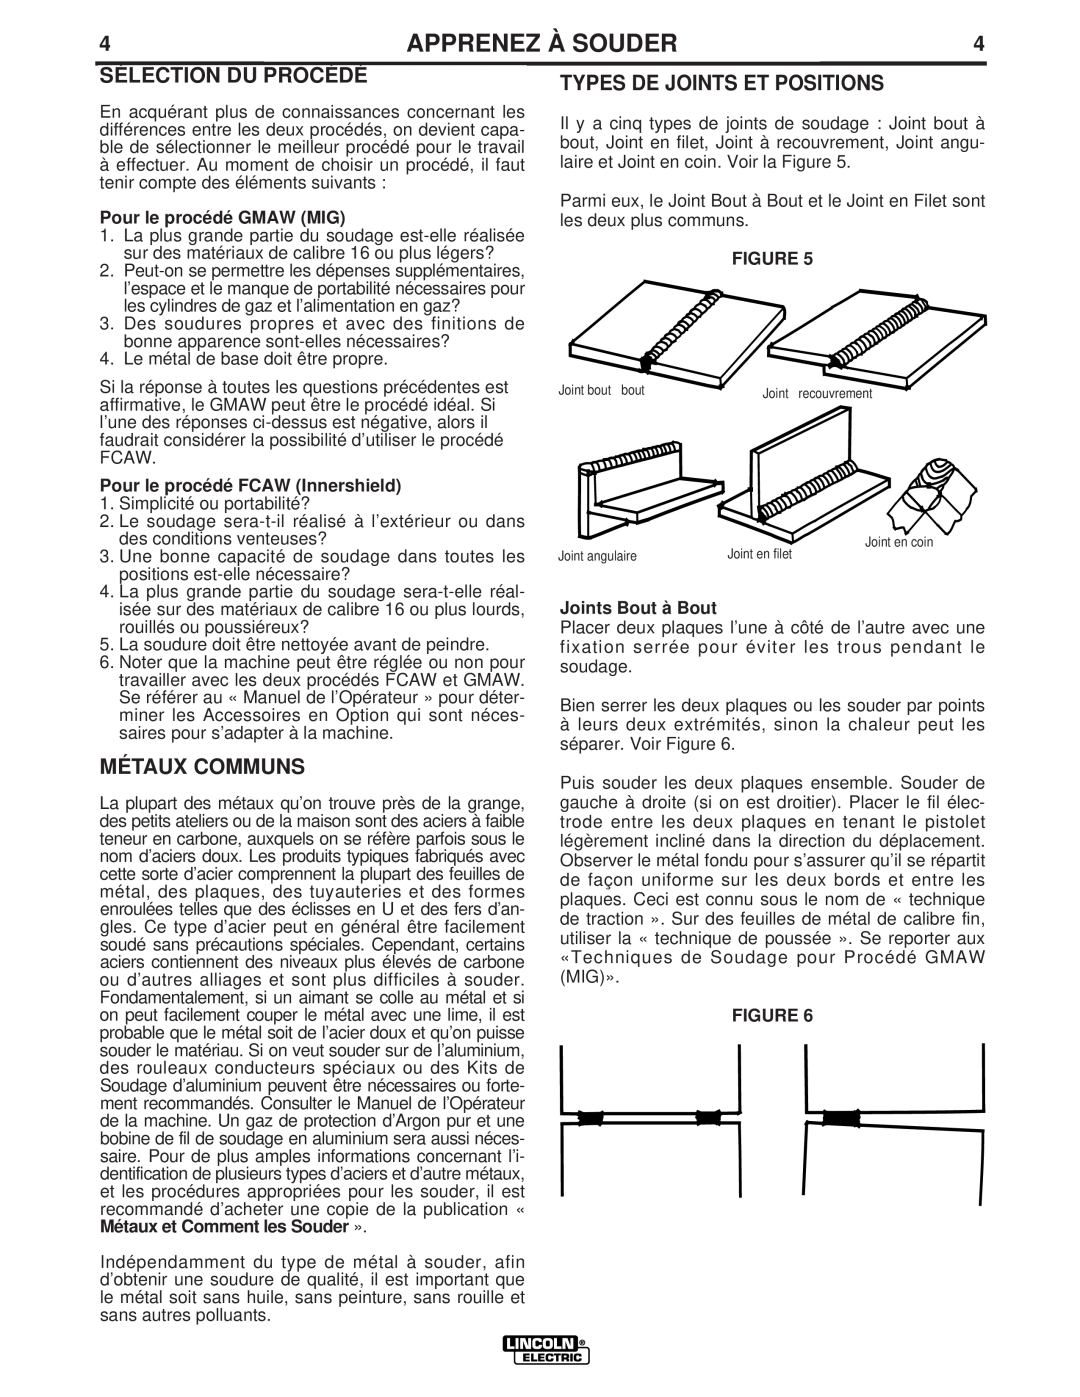 Lincoln Electric LTW1 manual Sélection Du Procédé, Métaux Communs, Types De Joints Et Positions, Pour le procédé GMAW MIG 